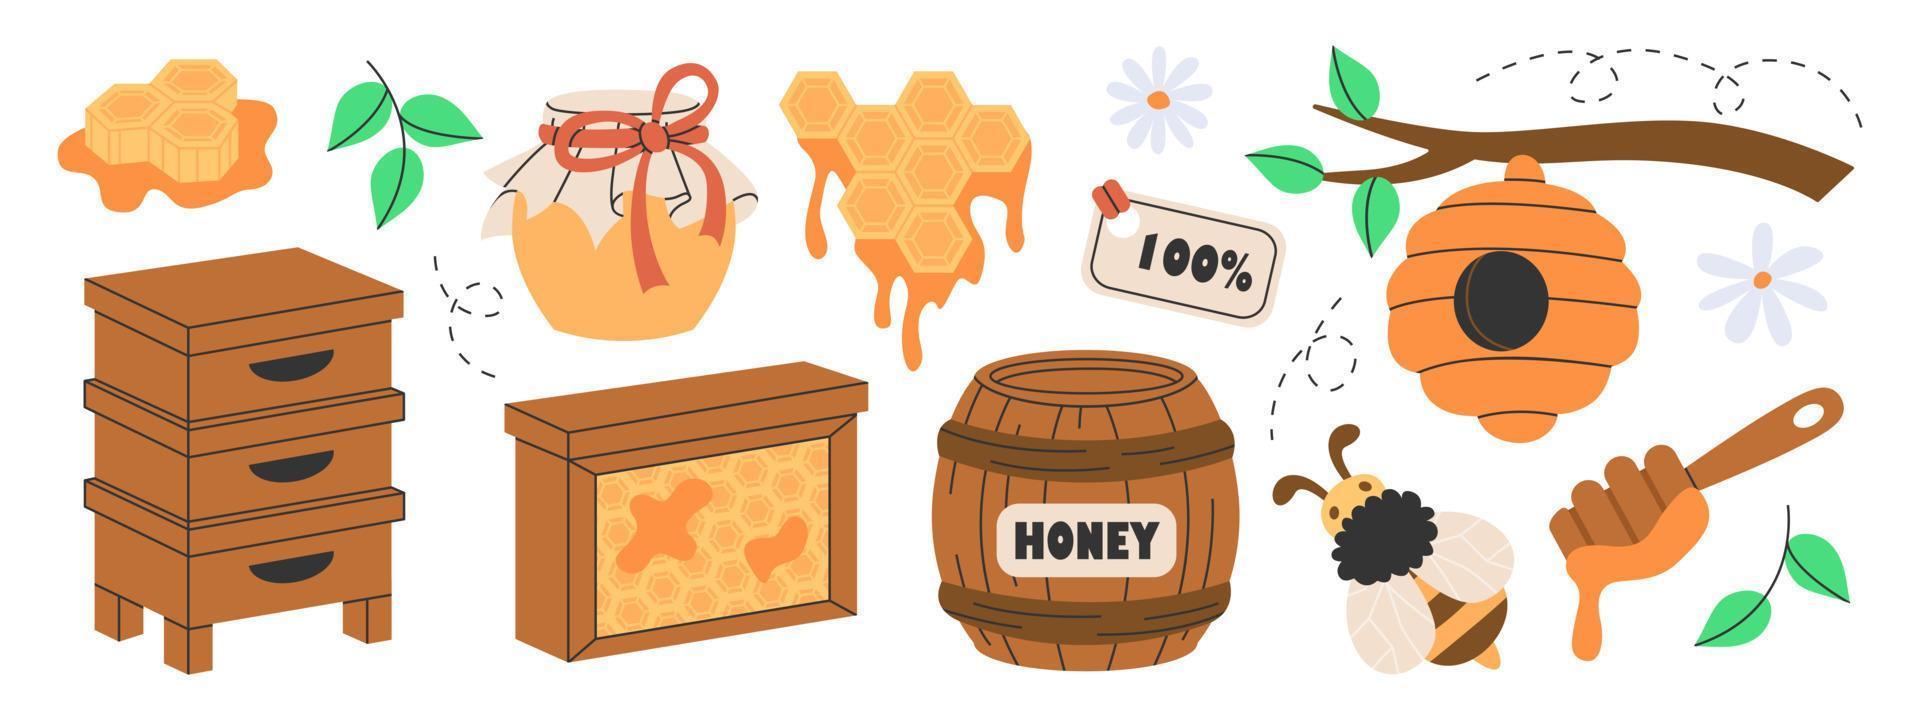 conjunto de atributos de produção de mel, apicultura ou apicultura. colmeia de madeira, favos de mel hexágono, abelha, mel em frasco de vidro, barril, flores, colher, colmeia de abelhas na árvore. doces naturais orgânicos do apiário. vetor